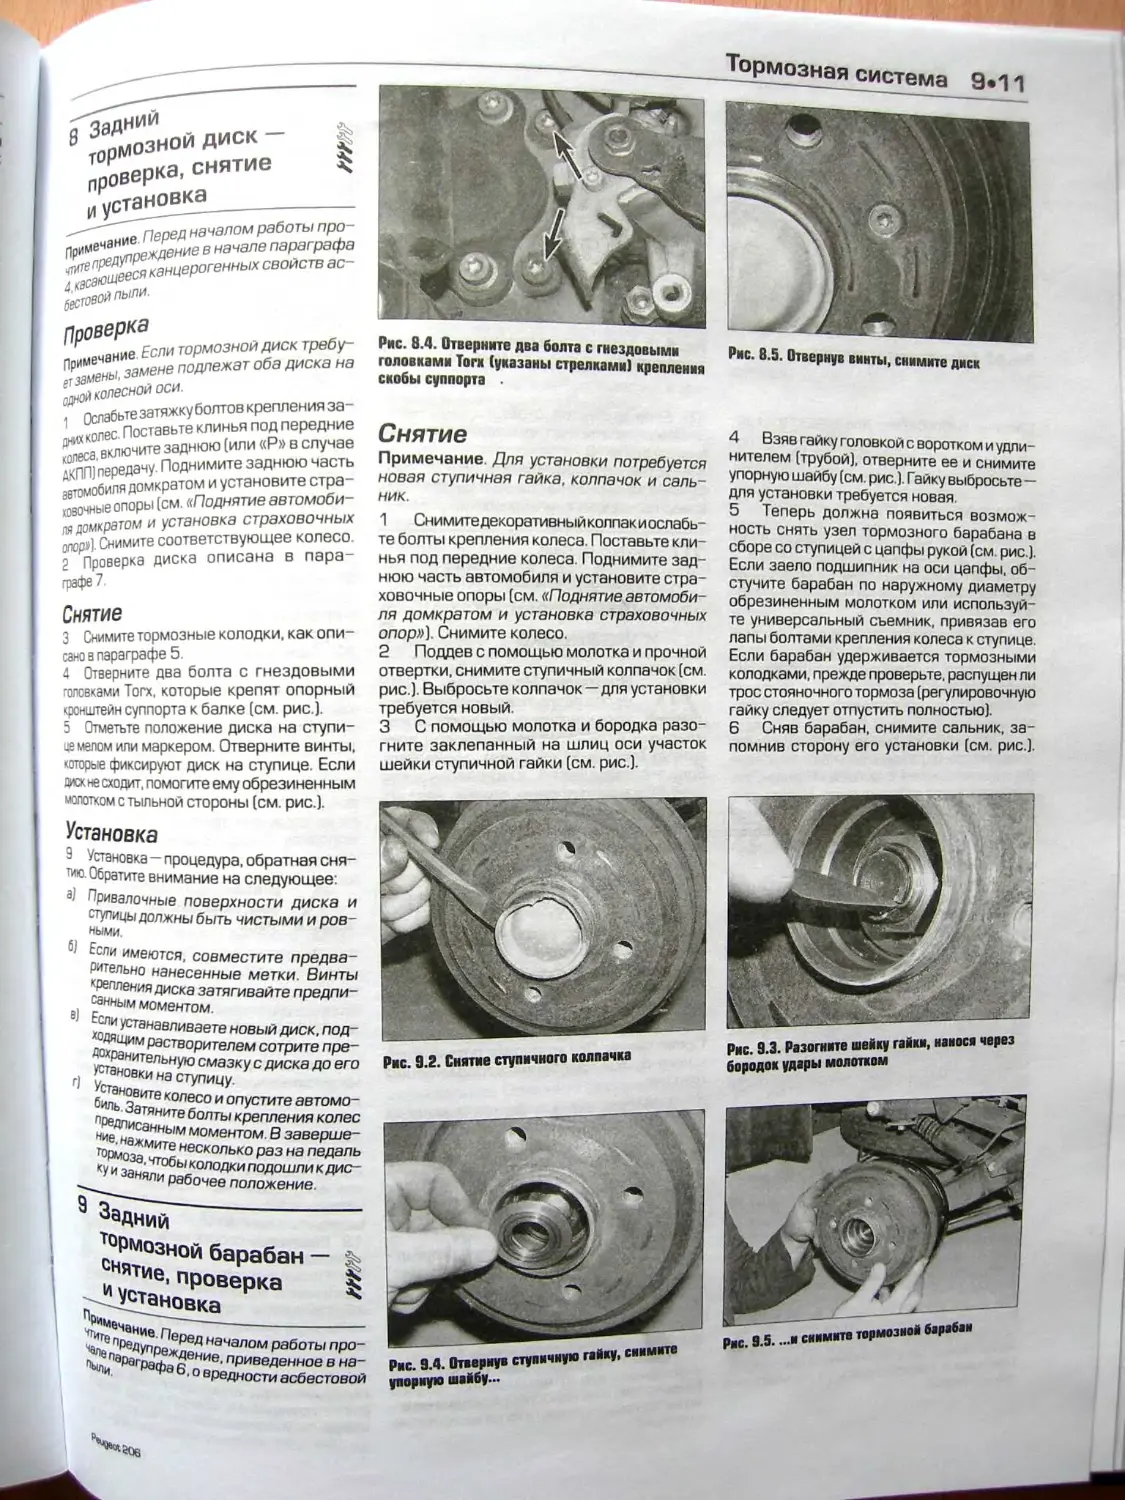 8. Задний тормозной диск – проверка, снятие и установка
9. Задний тормозной барабан – снятие, проверка и установка